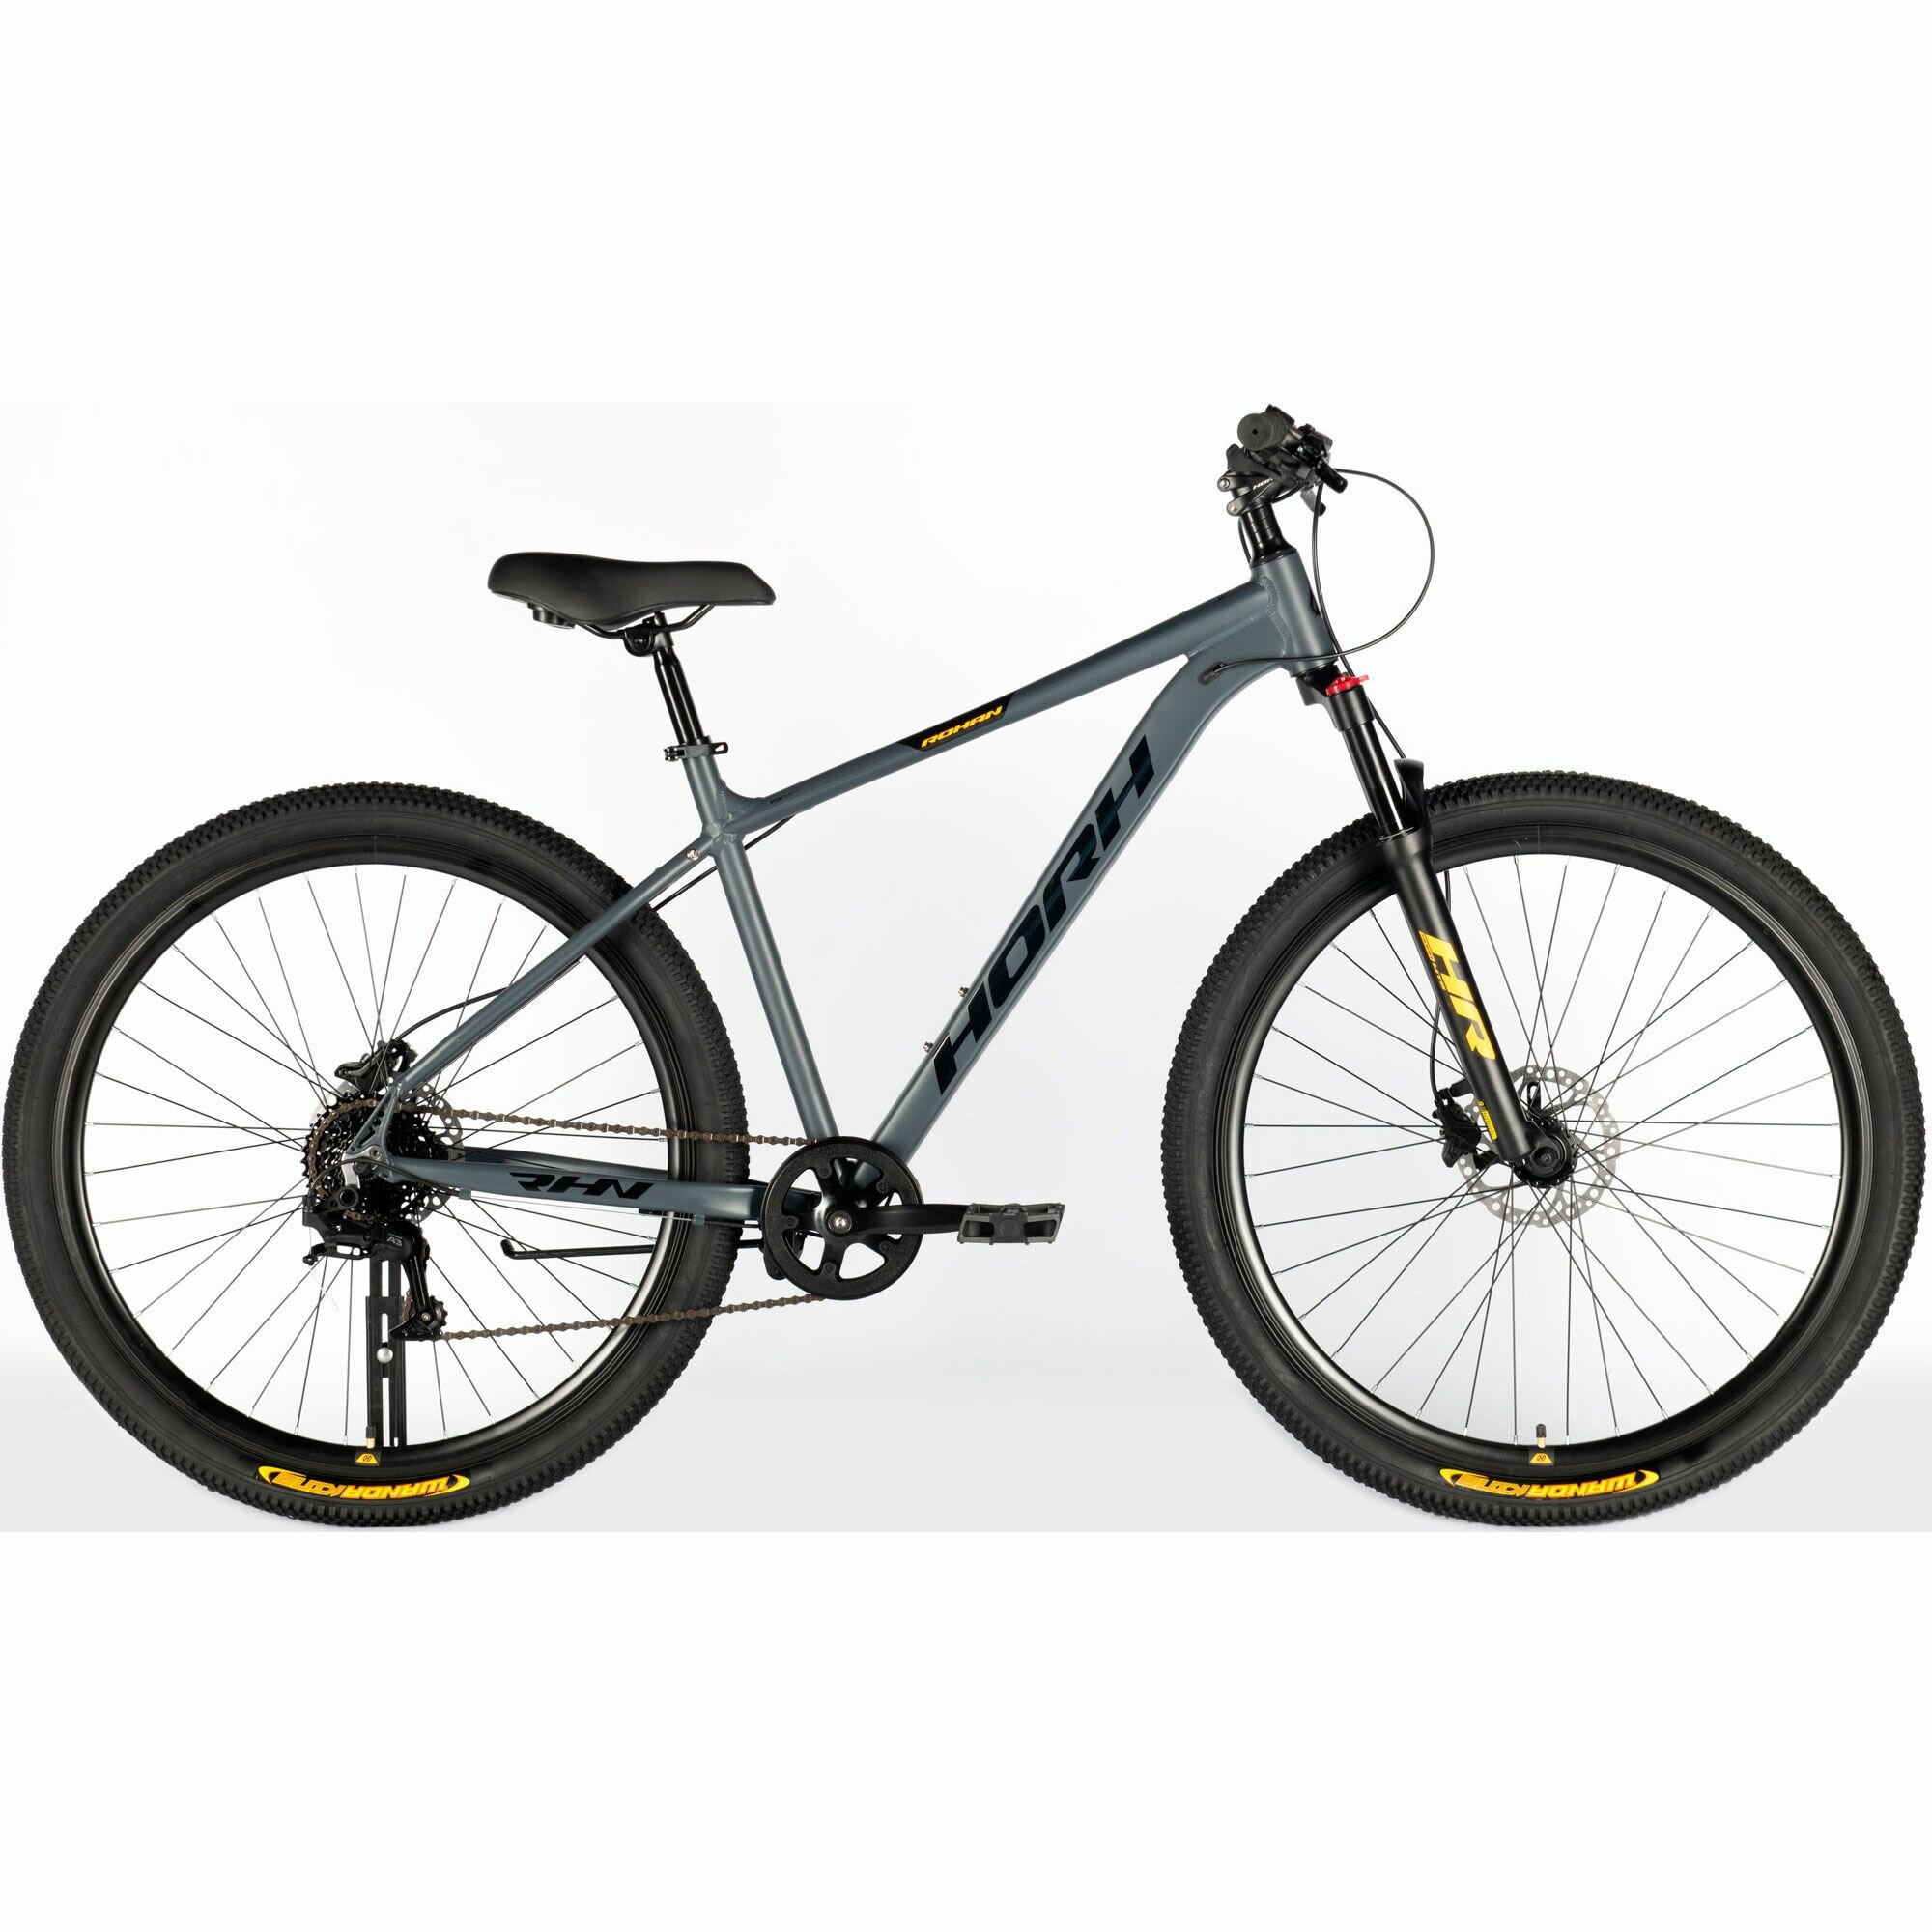 Велосипед горный HORH ROHAN RHD 9.1 29" (2024), хардтейл, взрослый, мужской, алюминиевая рама, 8 скоростей, дисковые гидравлические тормоза, цвет Dark Grey-Black-Yellow, серый/черный/желтый цвет, размер рамы 19", для роста 180-190 см